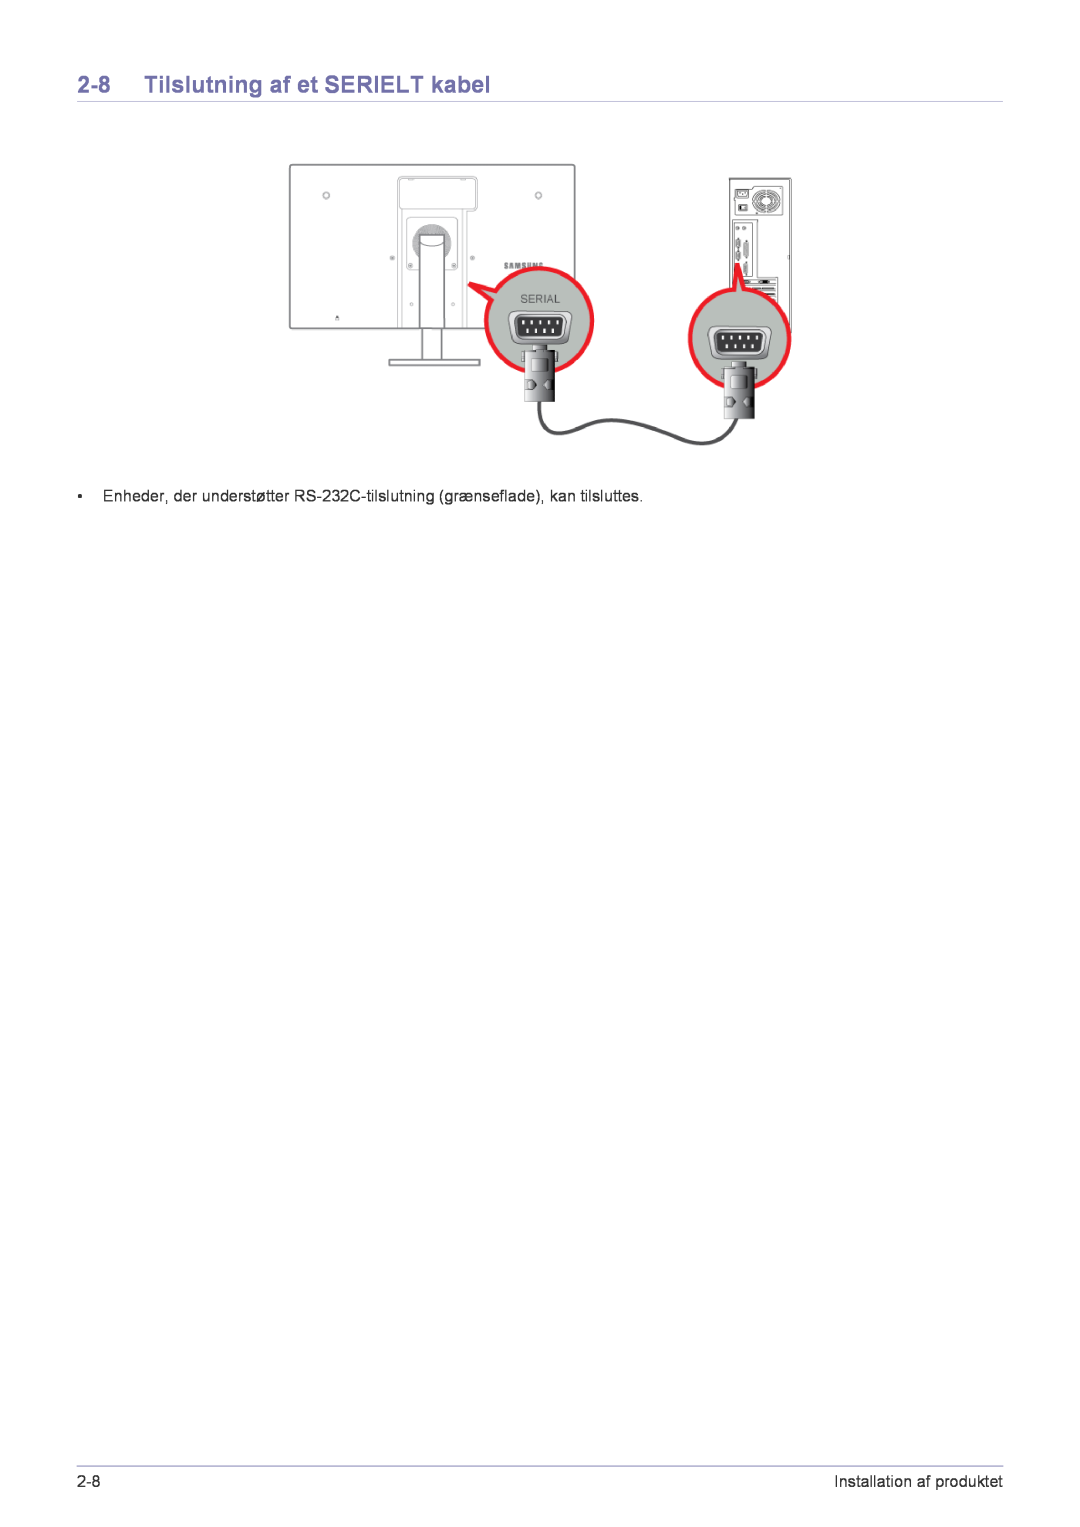 Samsung LF22NPBHBNP/EN manual Tilslutning af et SERIELT kabel, Installation af produktet 